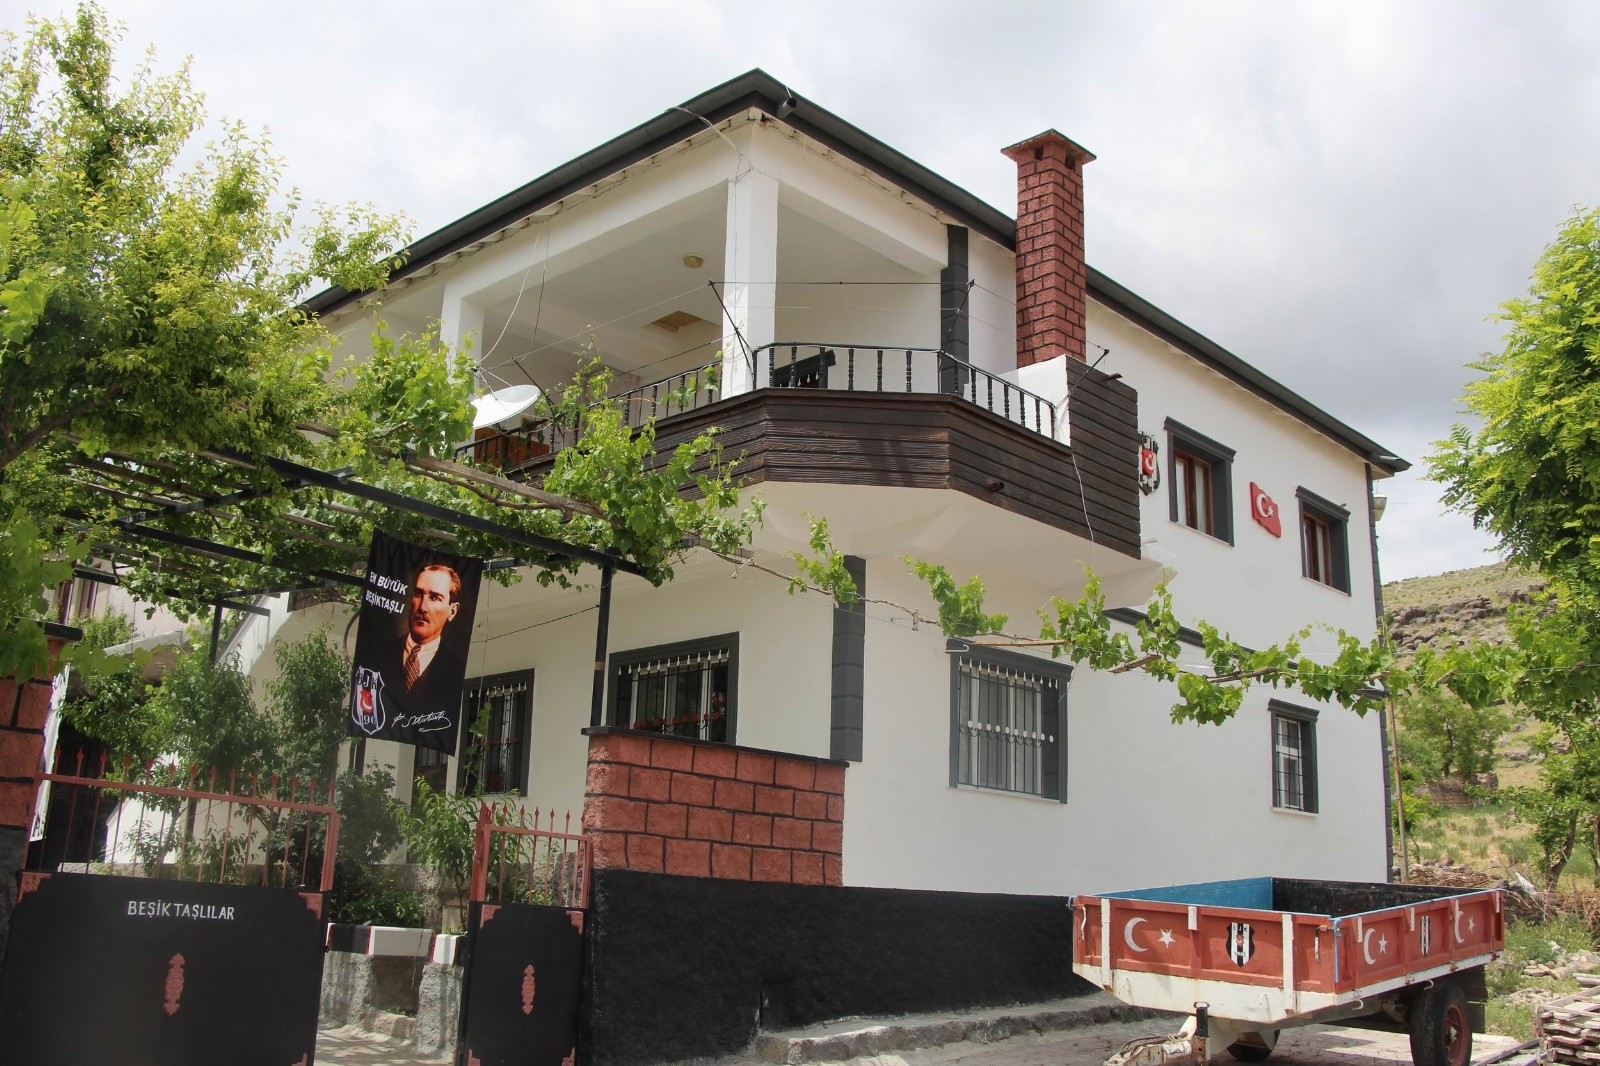 Beşiktaşlı taraftar, evinin her yerini siyah-beyaza boyadı